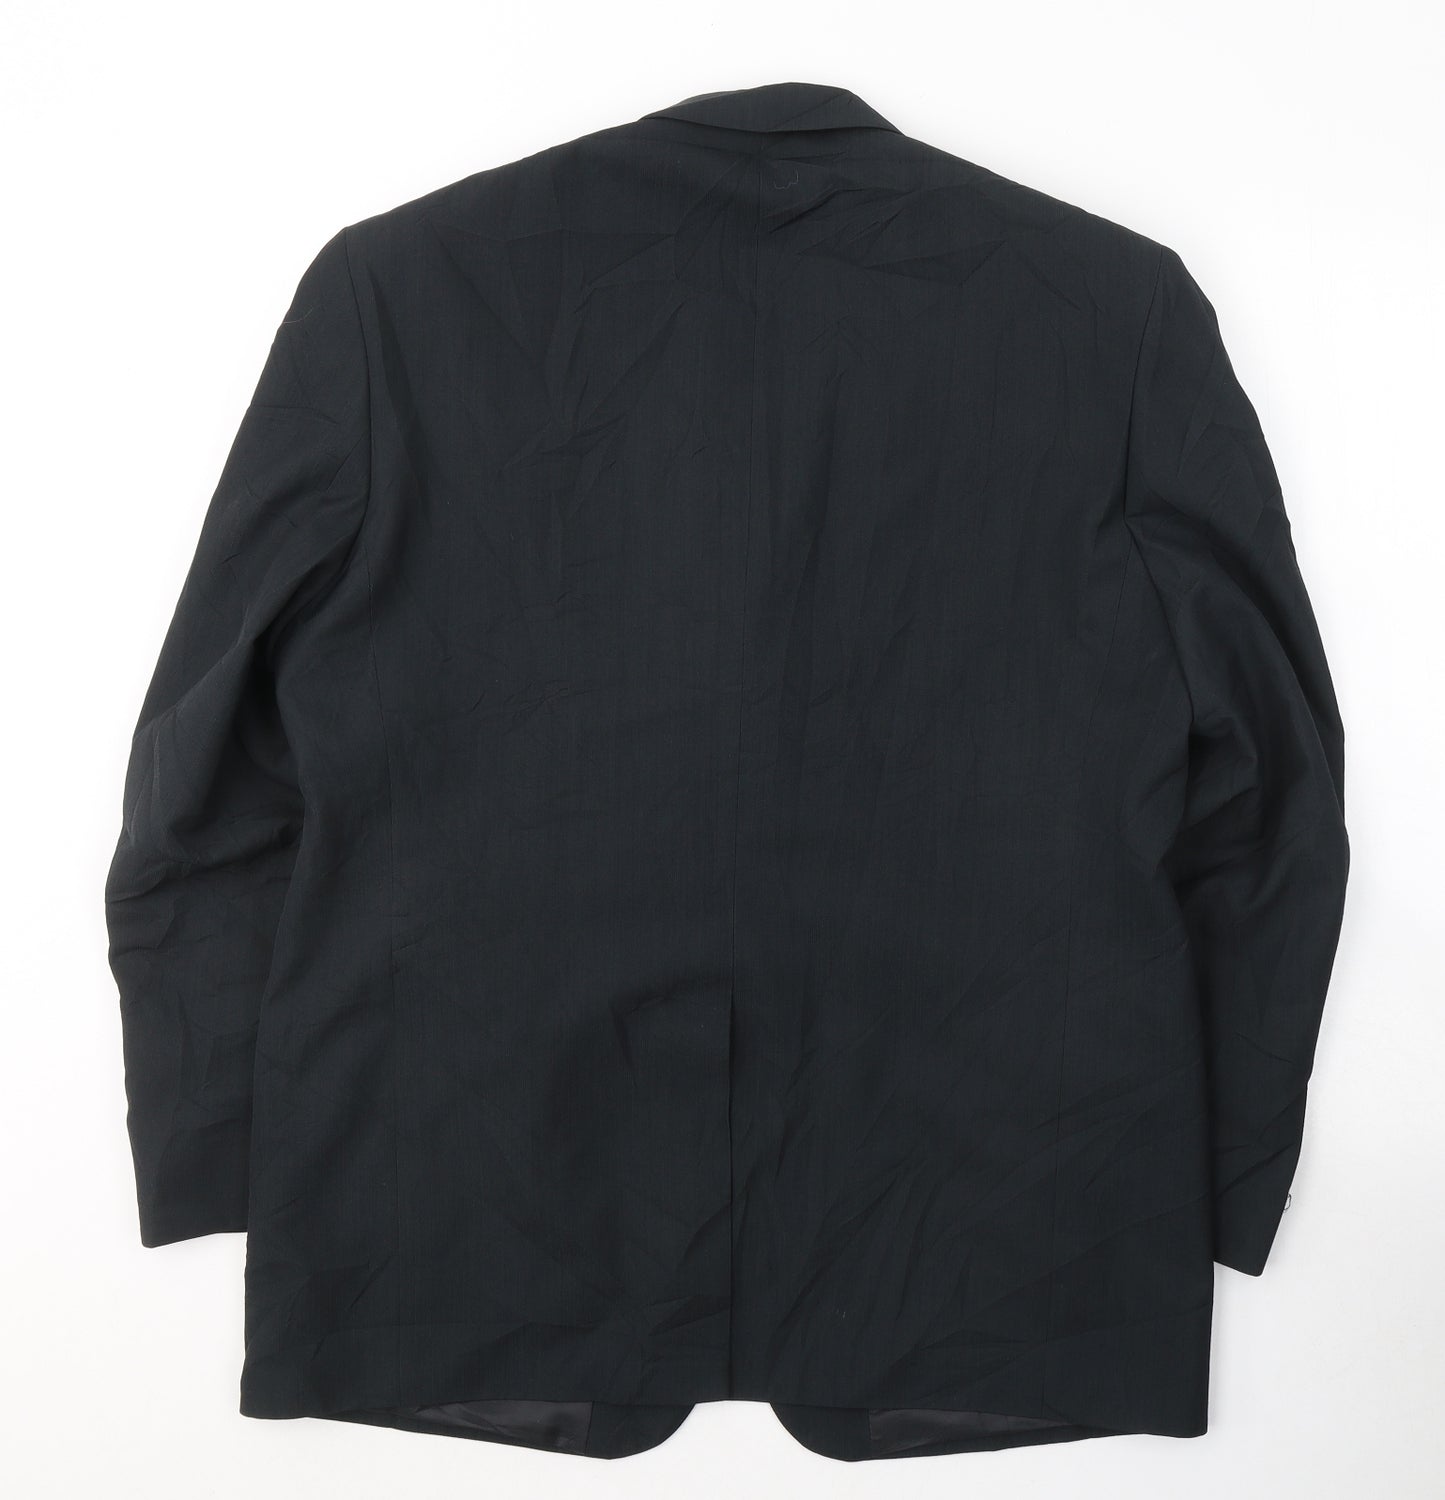 West Brook Mens Black  Polyester Jacket Suit Jacket Size 42